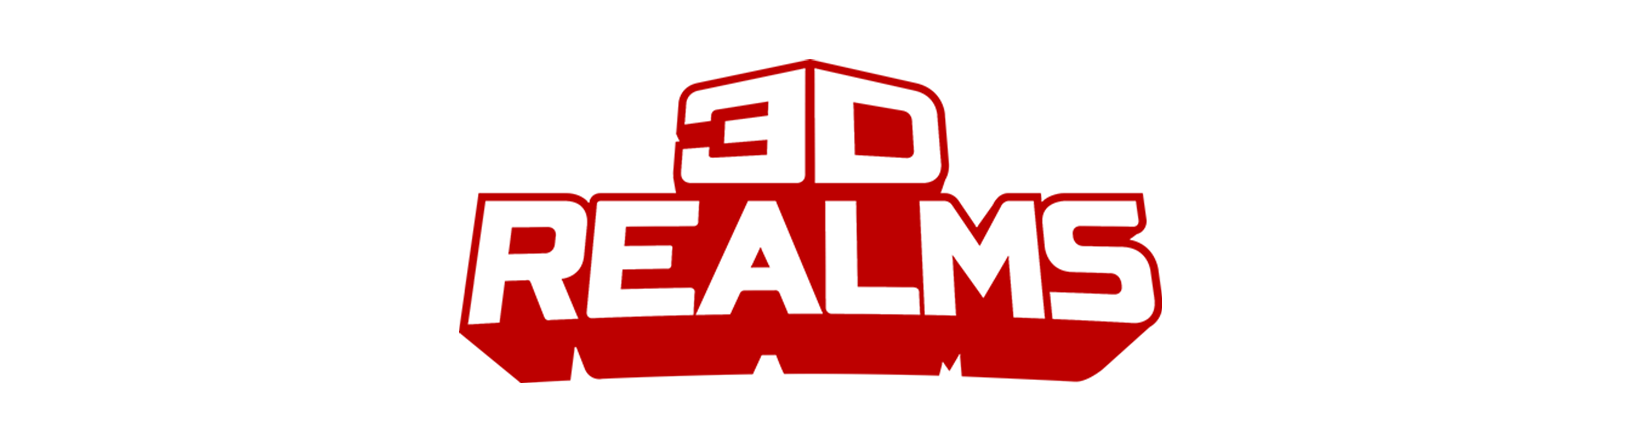 3drealms.com